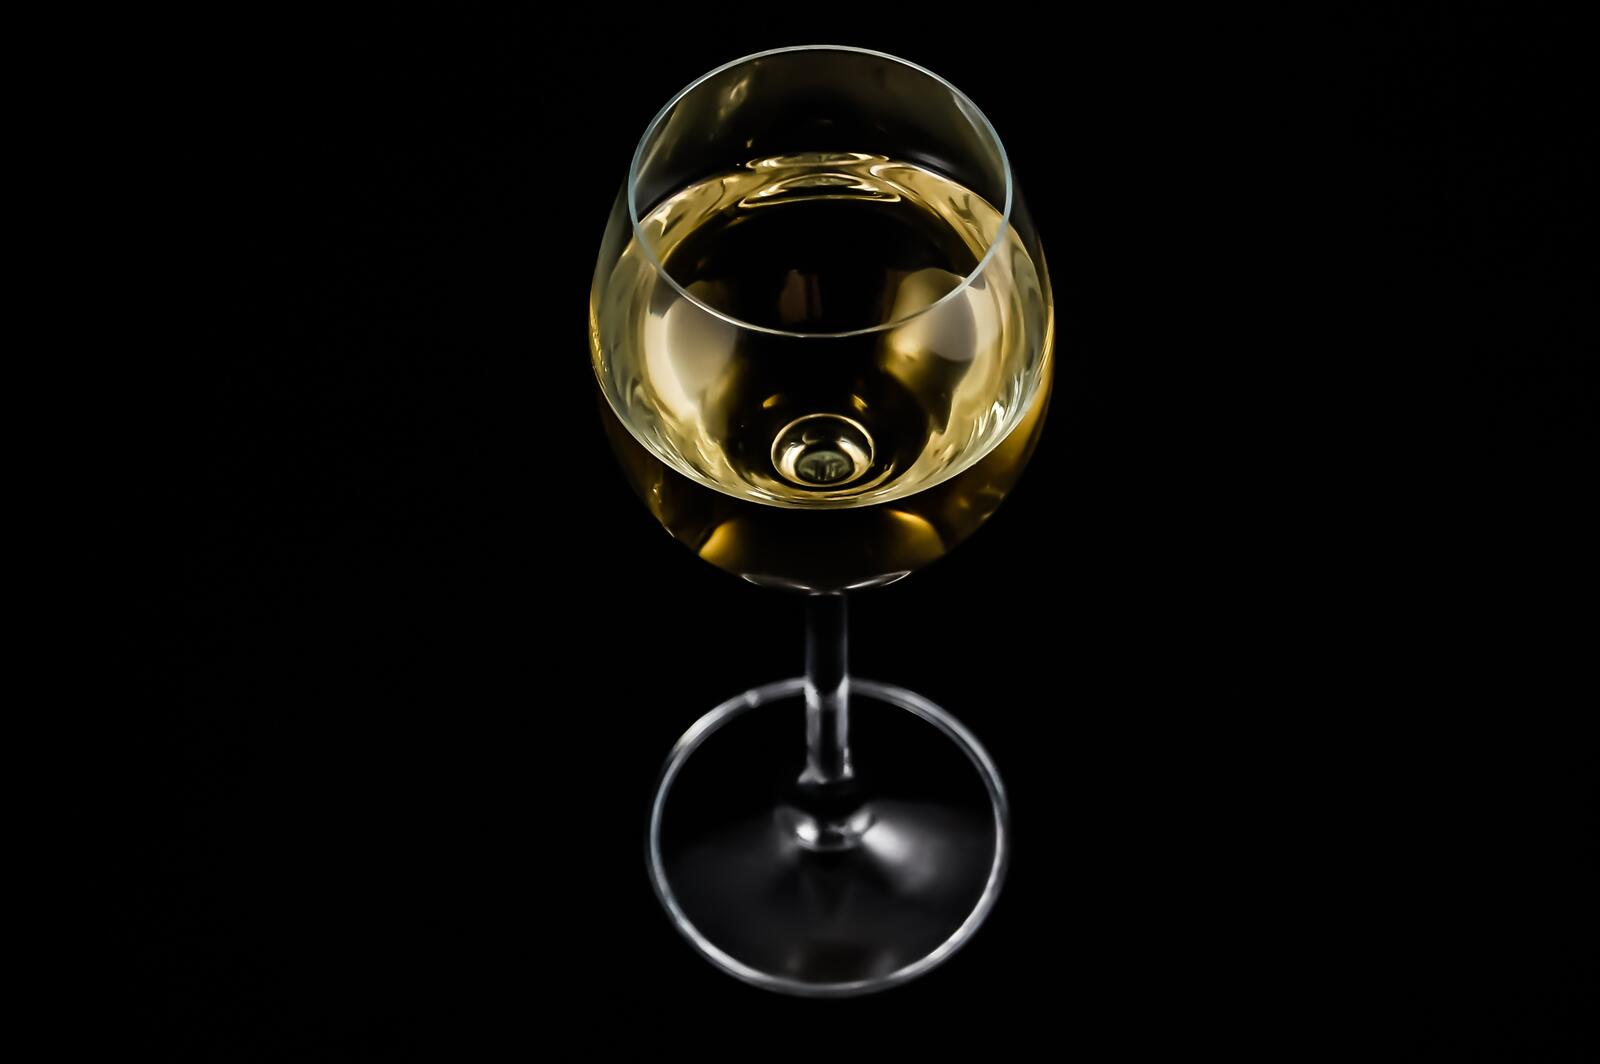 Бесплатное фото Бокал белого вина на черном фоне